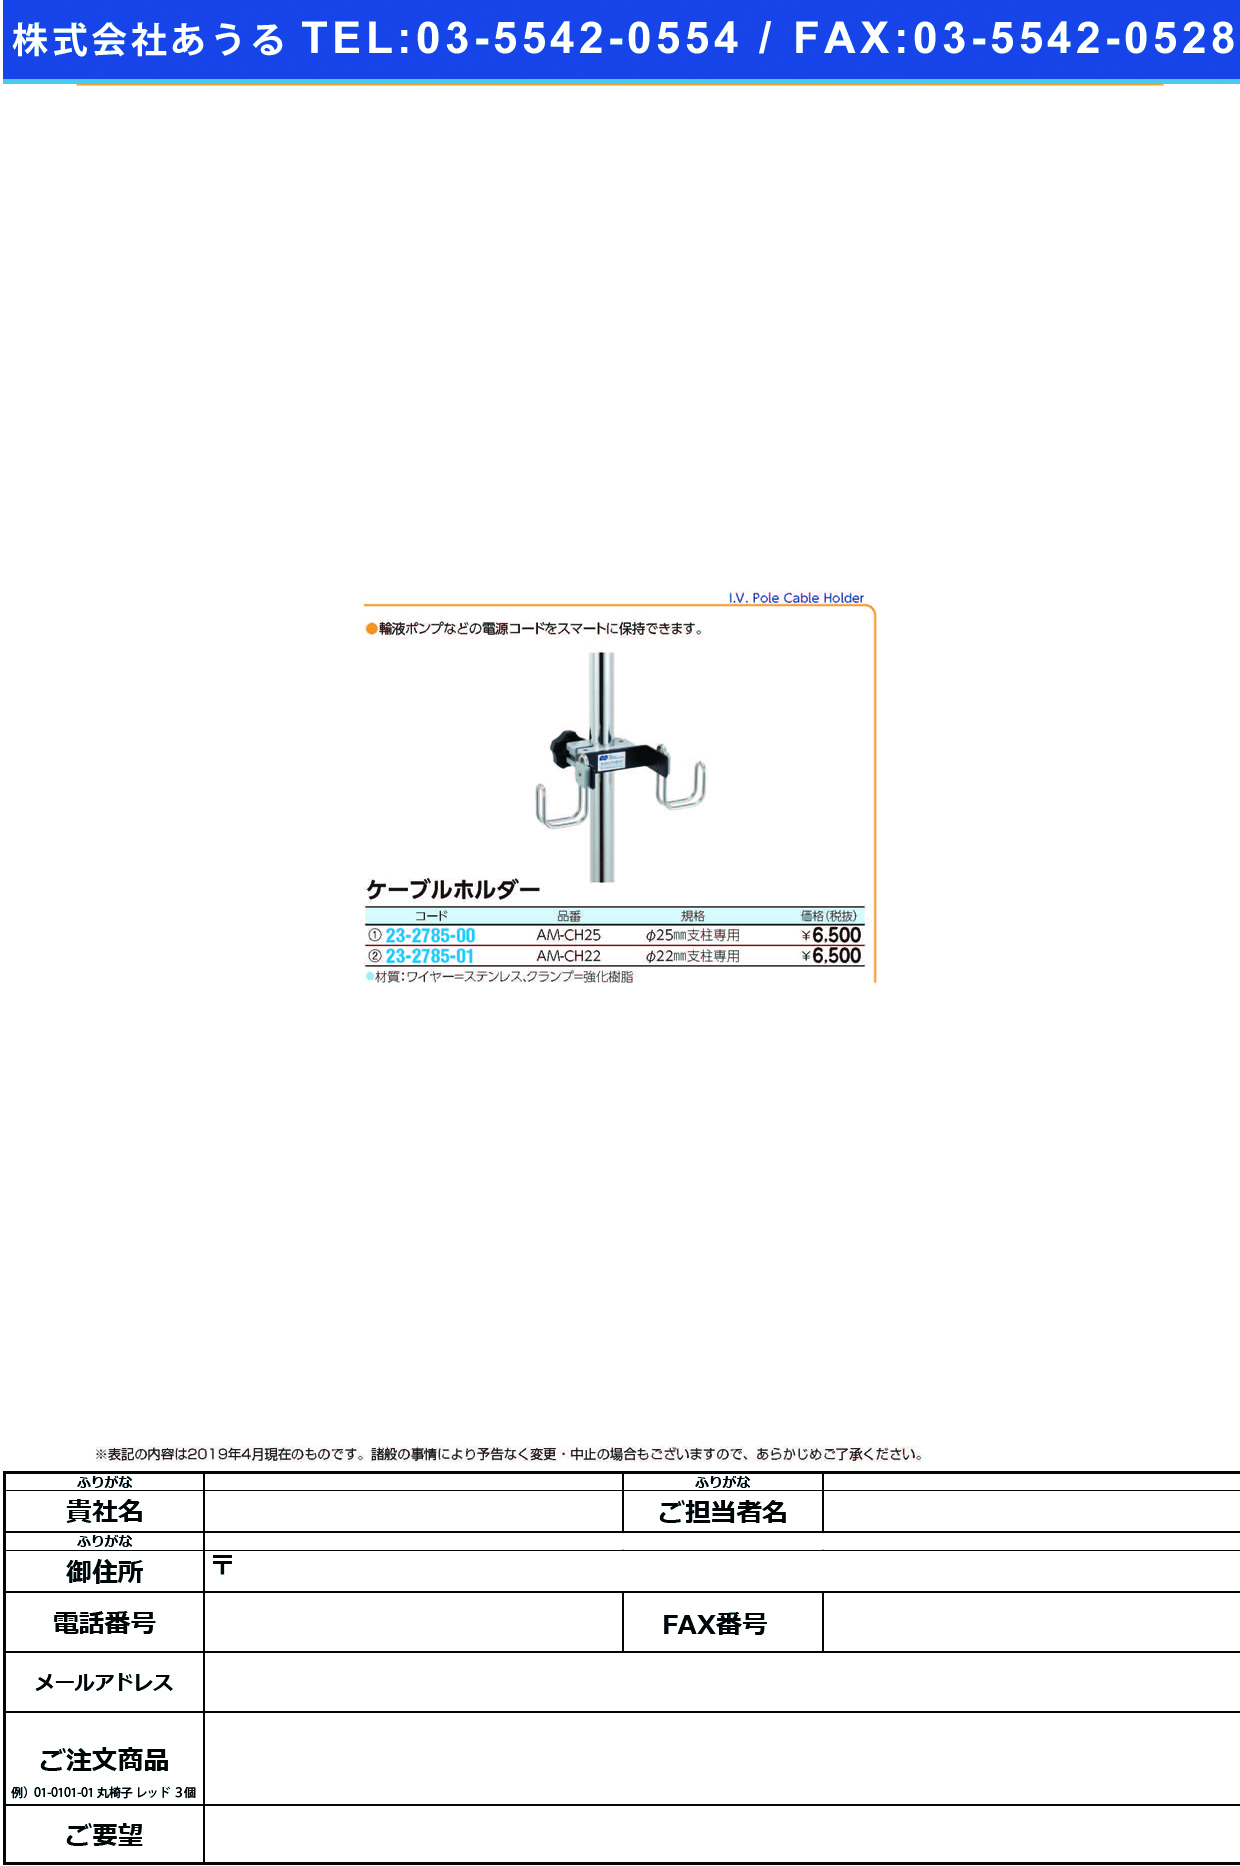 (23-2785-00)ケーブルホルダー（φ２５ｍｍ支柱専用 AM-CH25 ｹｰﾌﾞﾙﾎﾙﾀﾞｰ(ｹｲ25MMﾖｳ)【1個単位】【2019年カタログ商品】